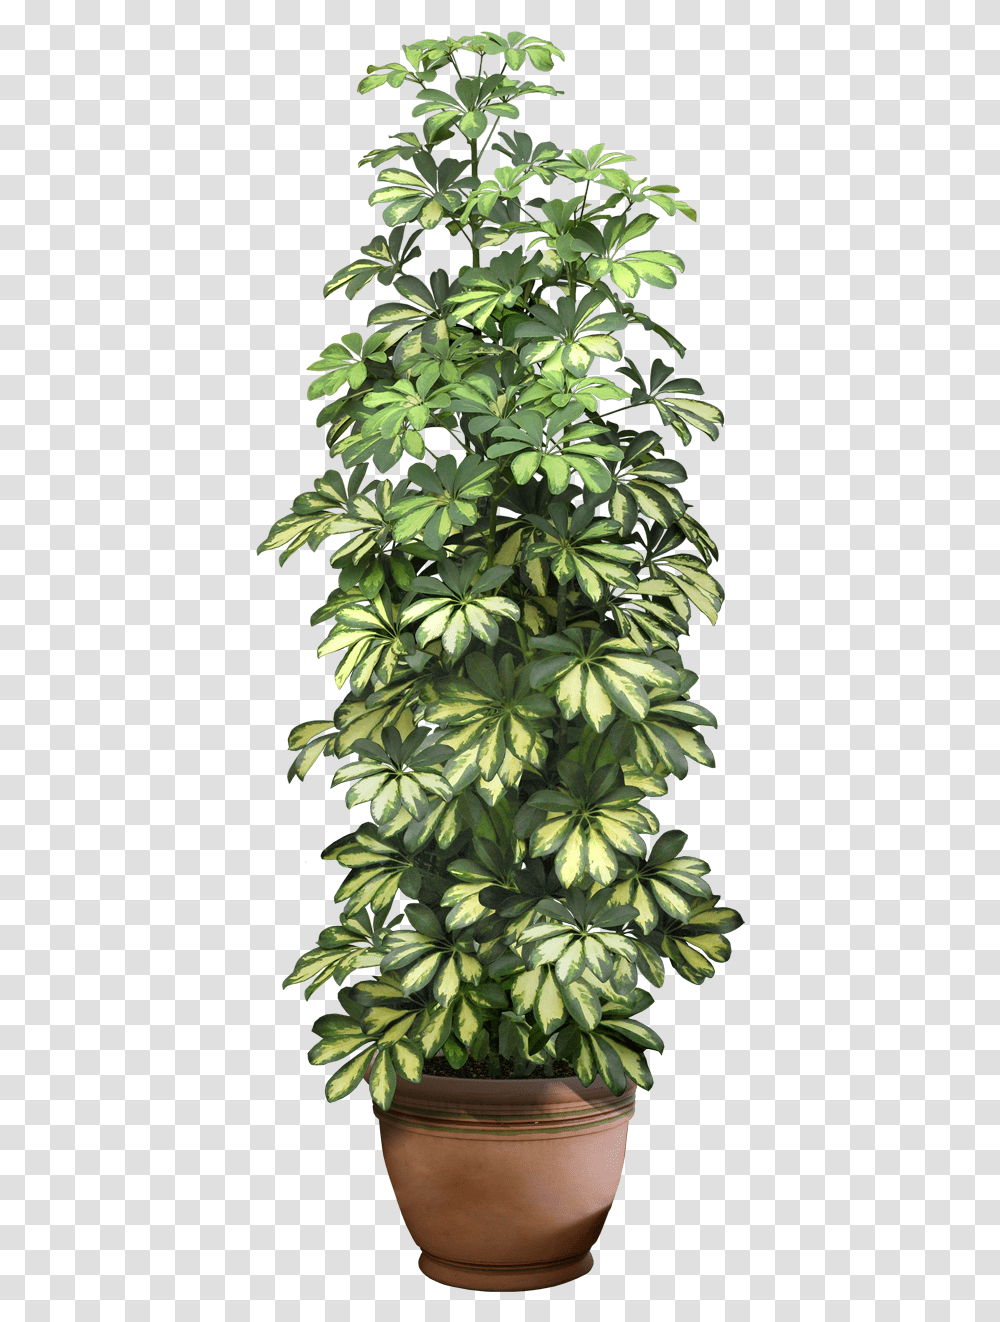 Recursos Chele Guada Format Flower Pot, Leaf, Plant, Pineapple, Fruit Transparent Png